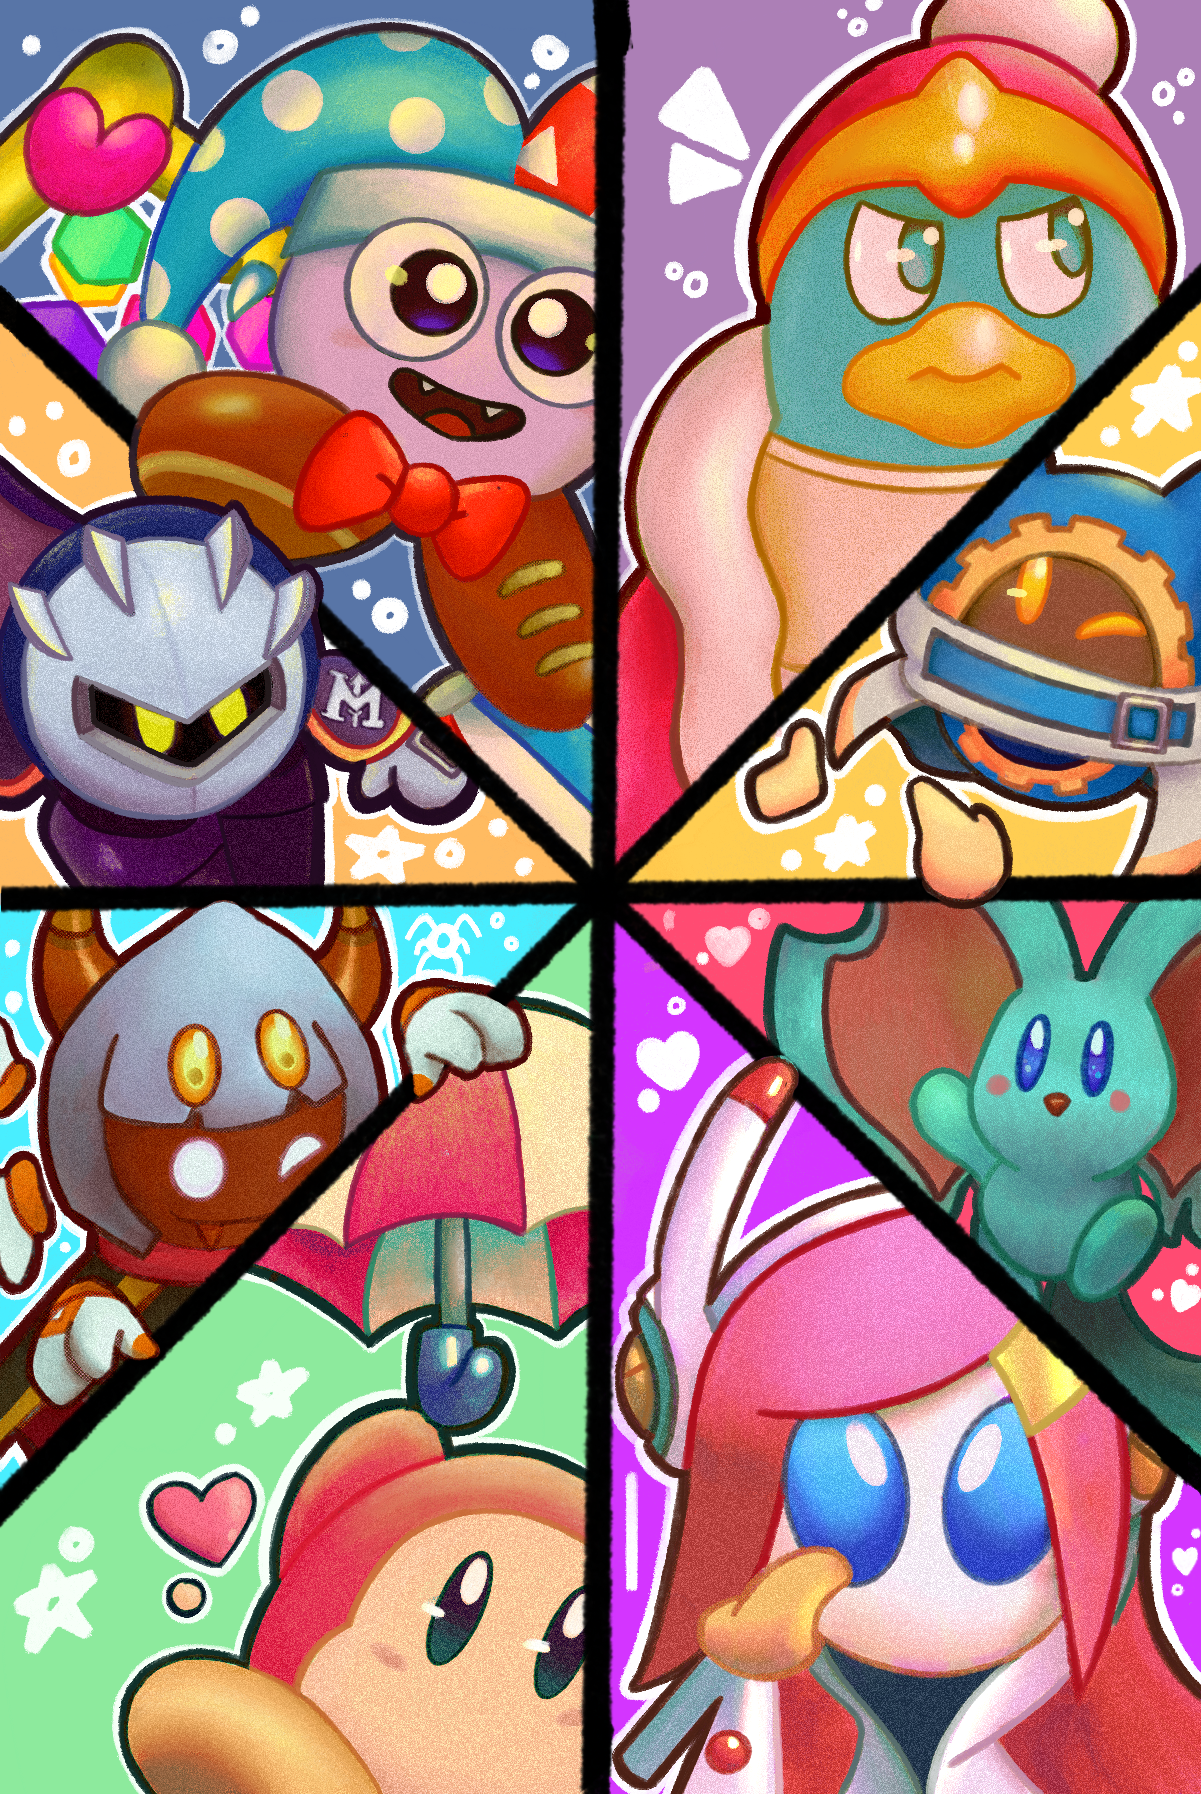 Kirby Star Allies 2 by SuperSaiyanCrash on DeviantArt